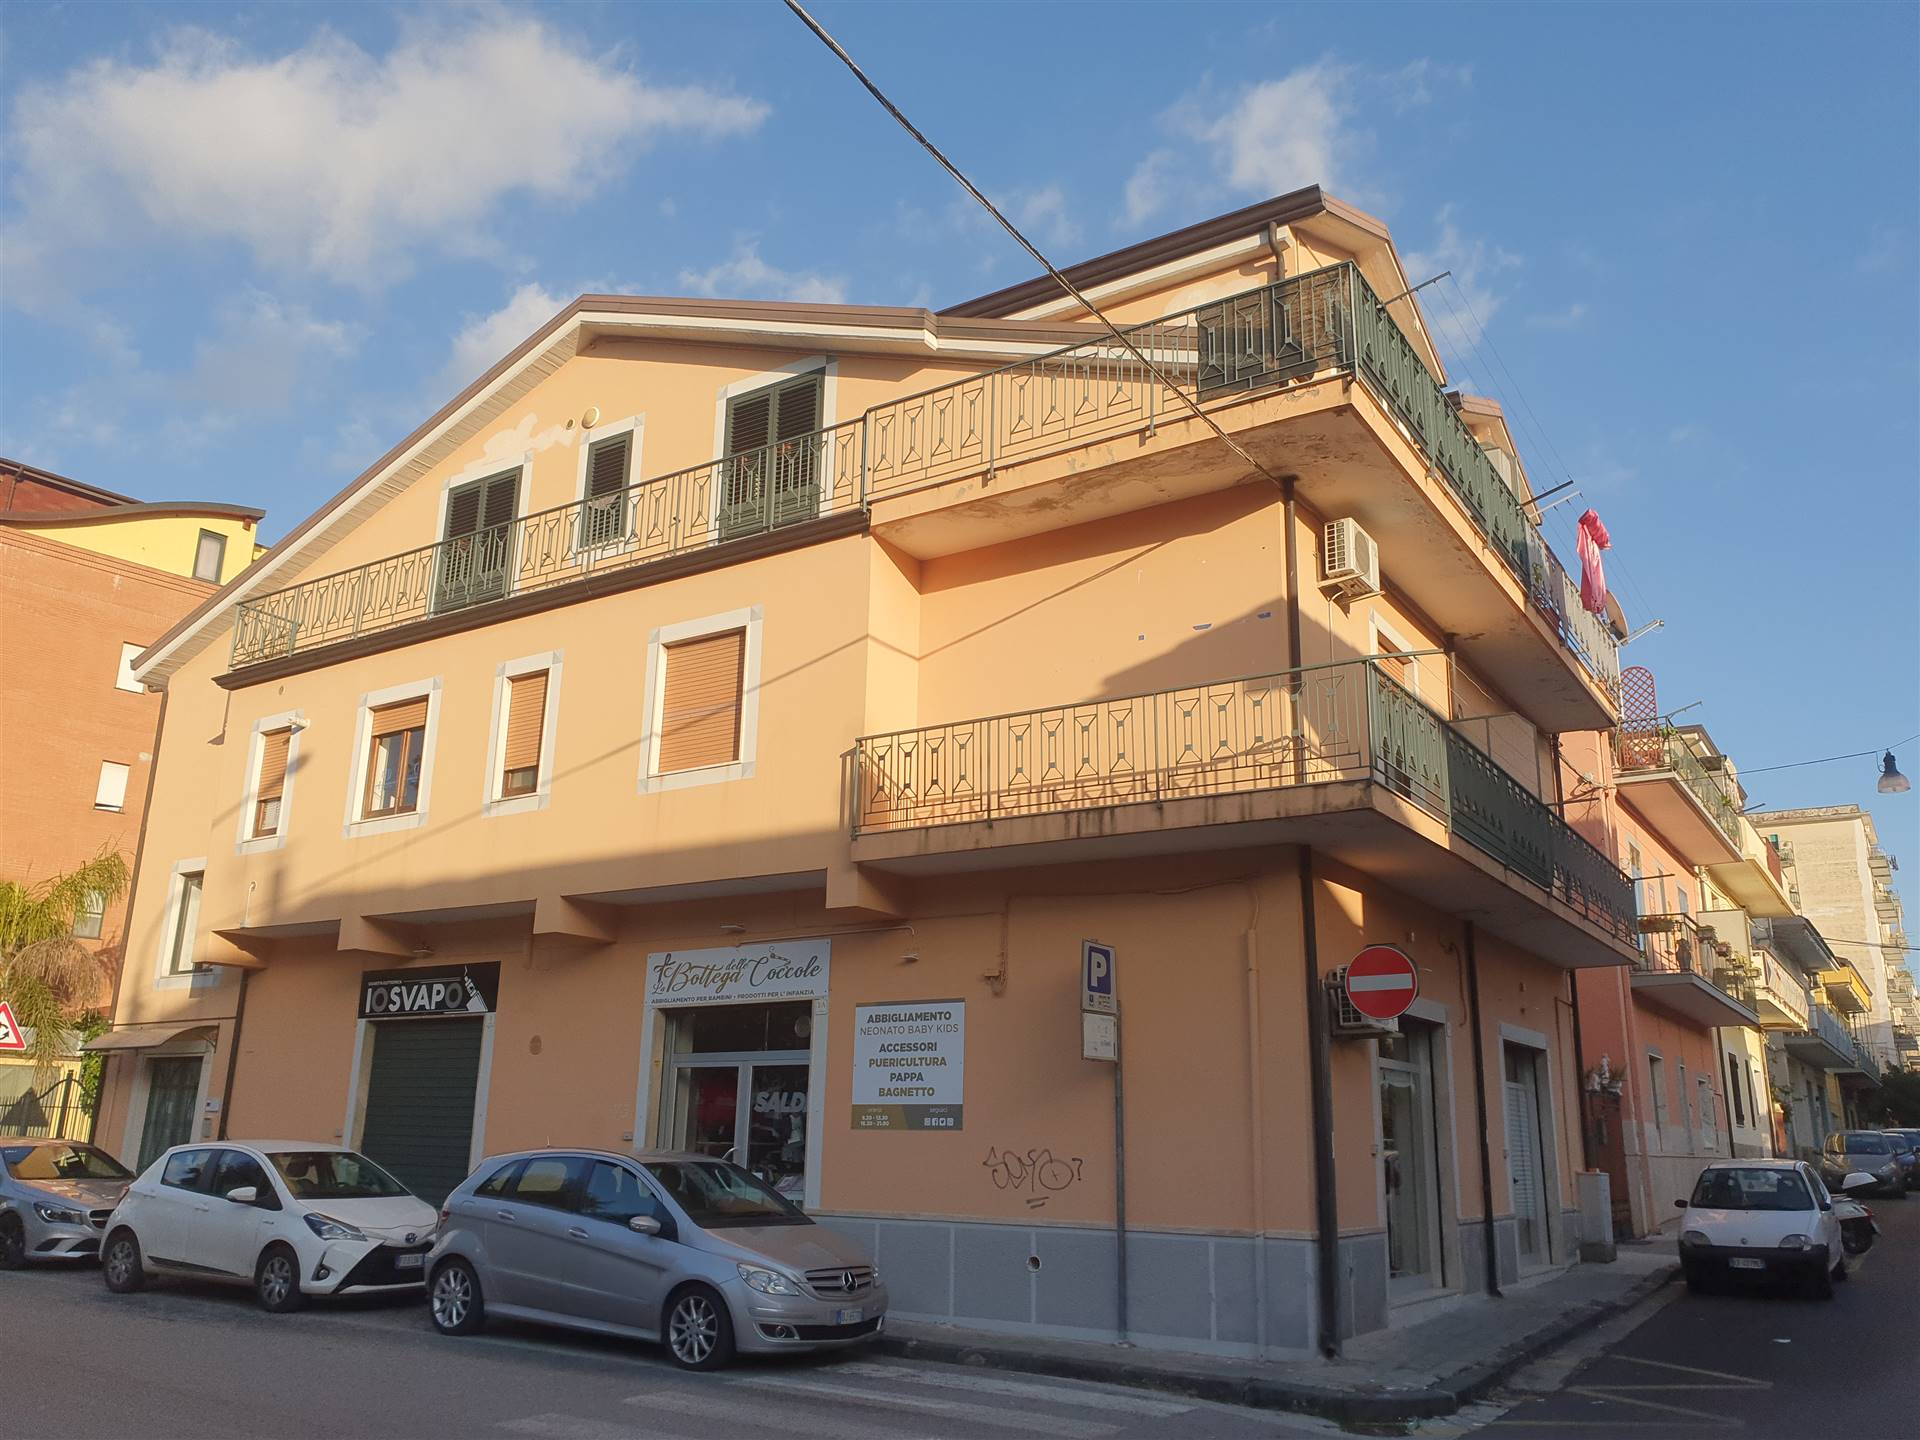 Immobile Commerciale in vendita a Bellizzi, 9999 locali, prezzo € 68.000 | PortaleAgenzieImmobiliari.it